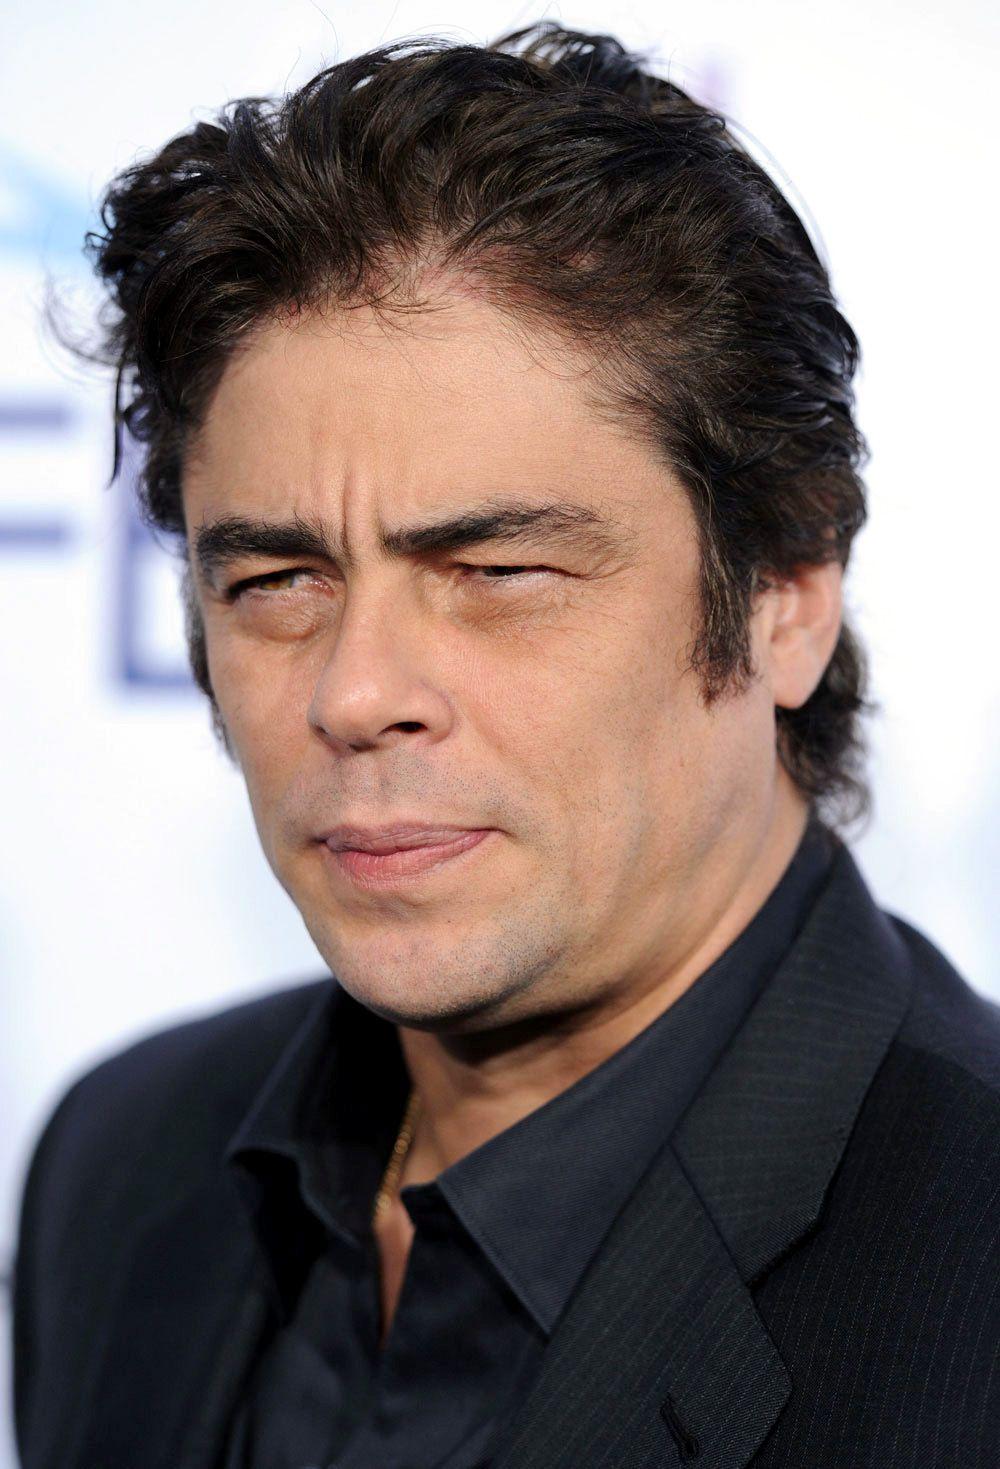 HD Benicio Del Toro Wallpaper and Photo. HD Celebrities Wallpaper